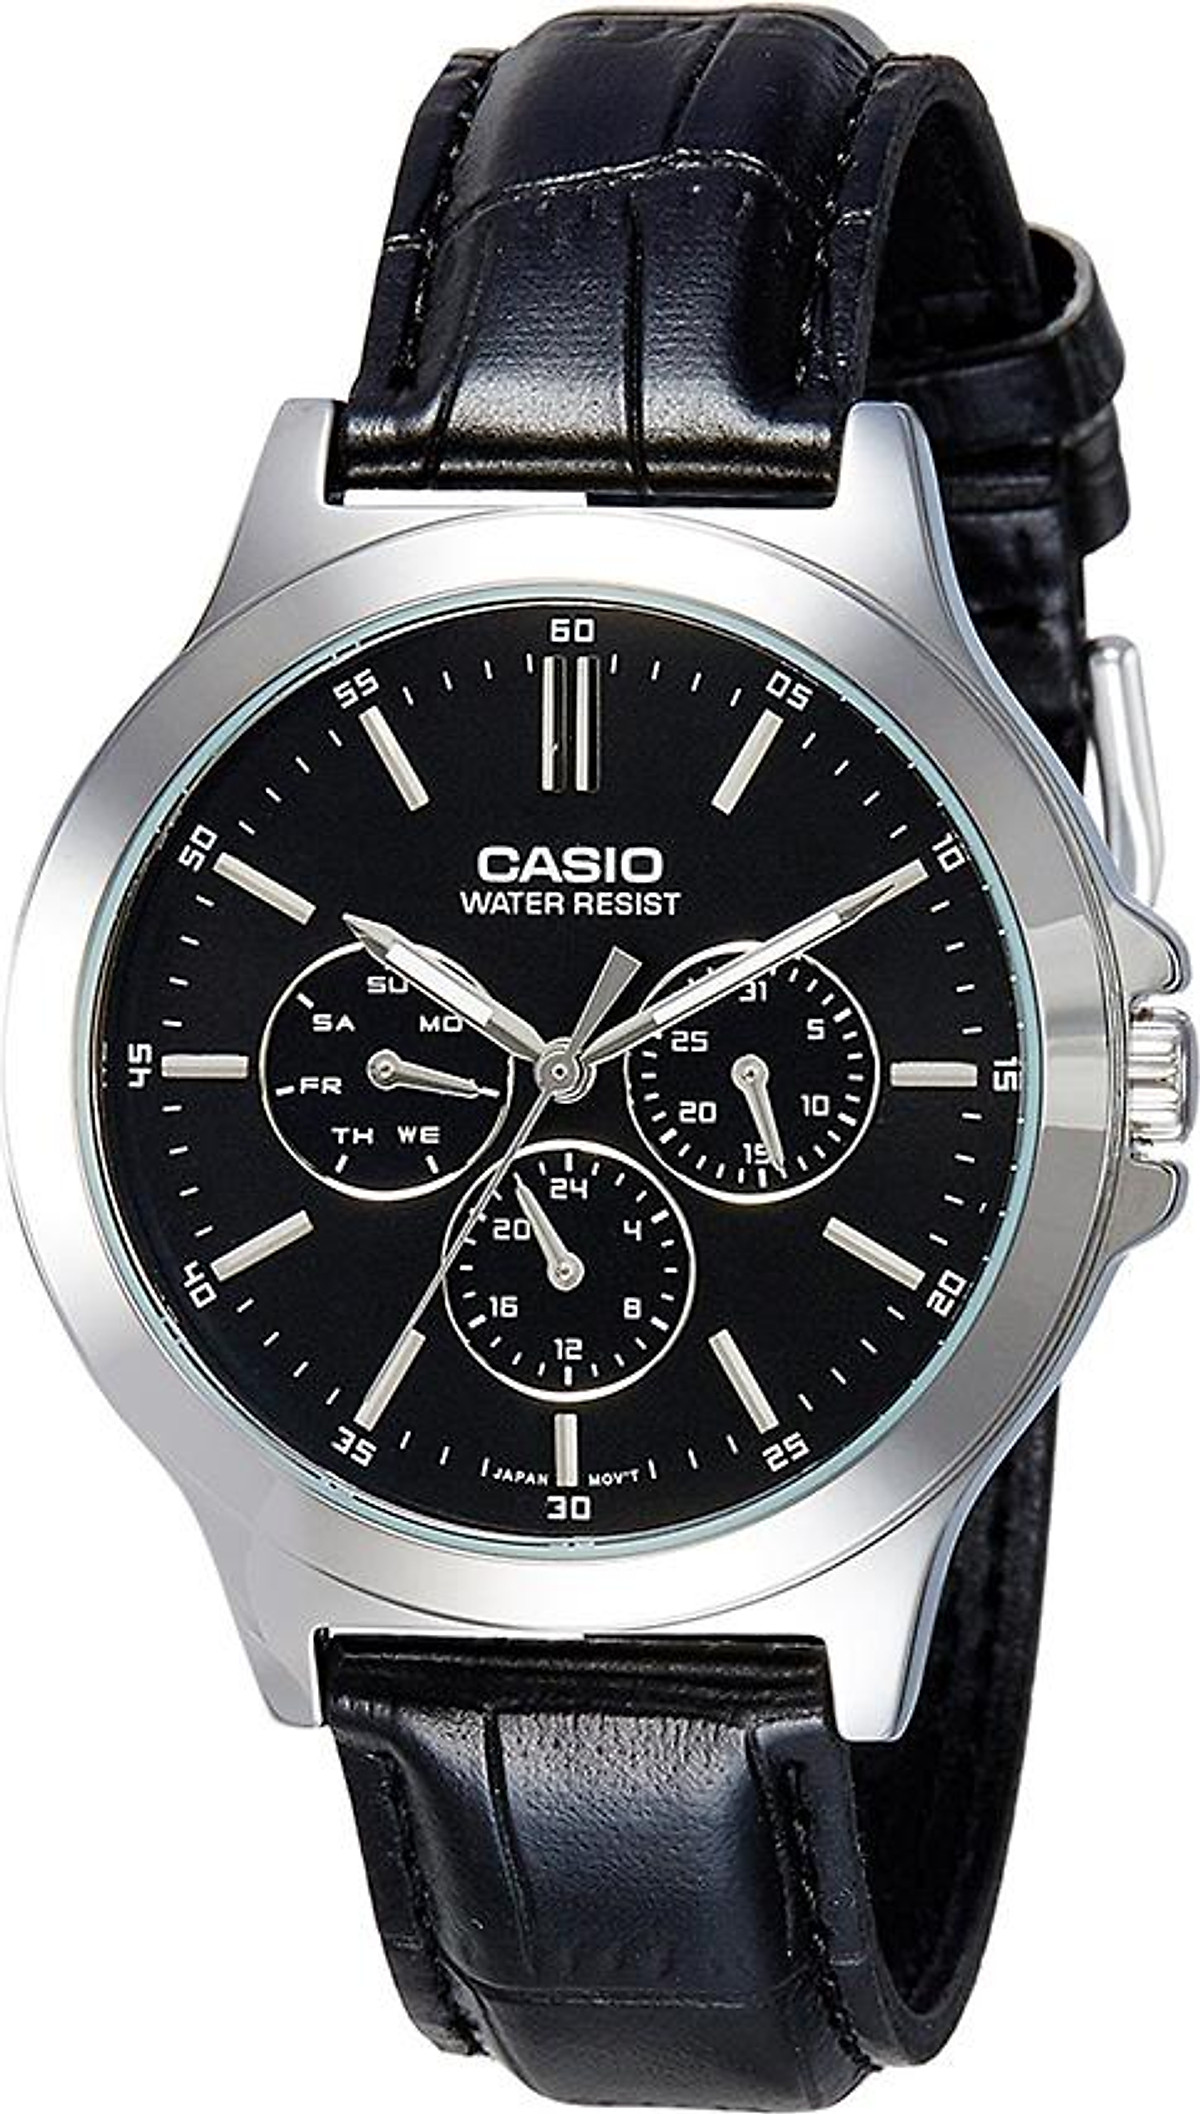 Khám phá đồng hồ Casio MTP-V300L-7AUDF